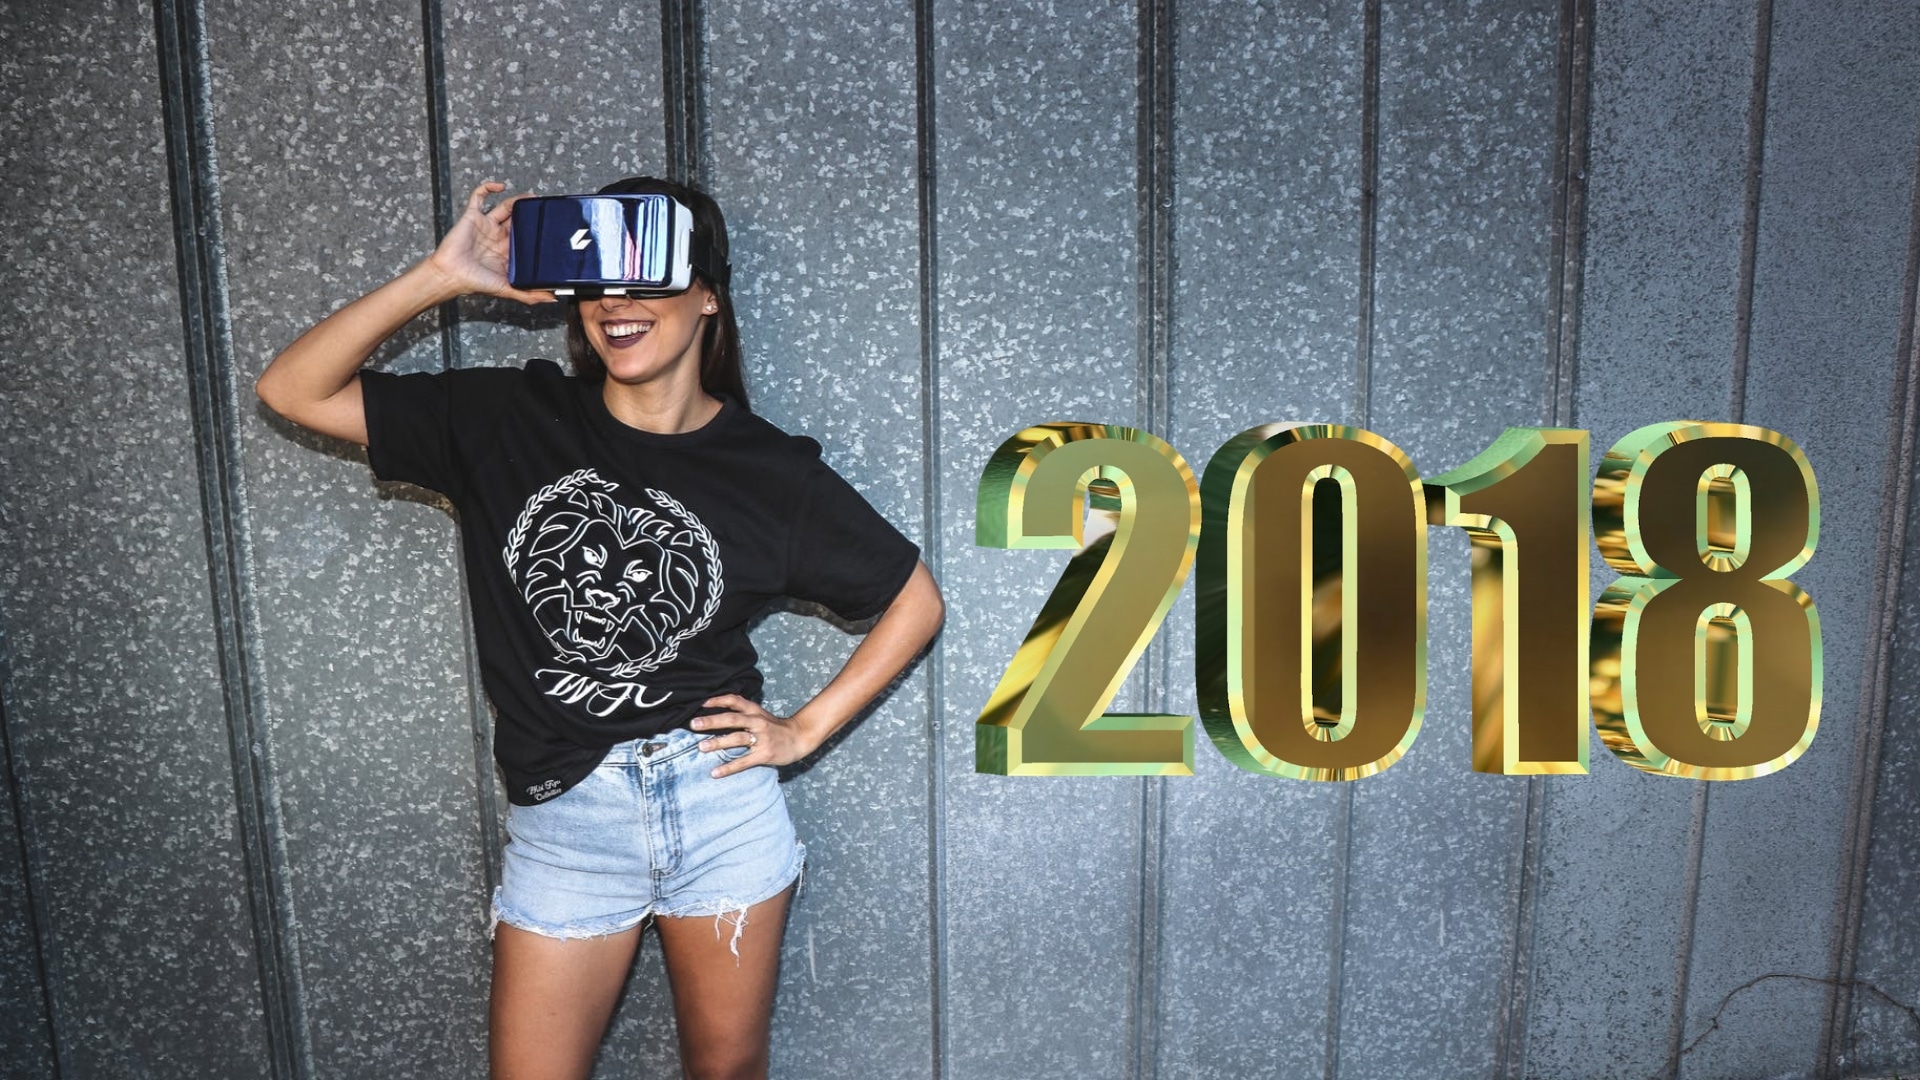 réalité virtuelle augmentée 2018 bilan vr ar